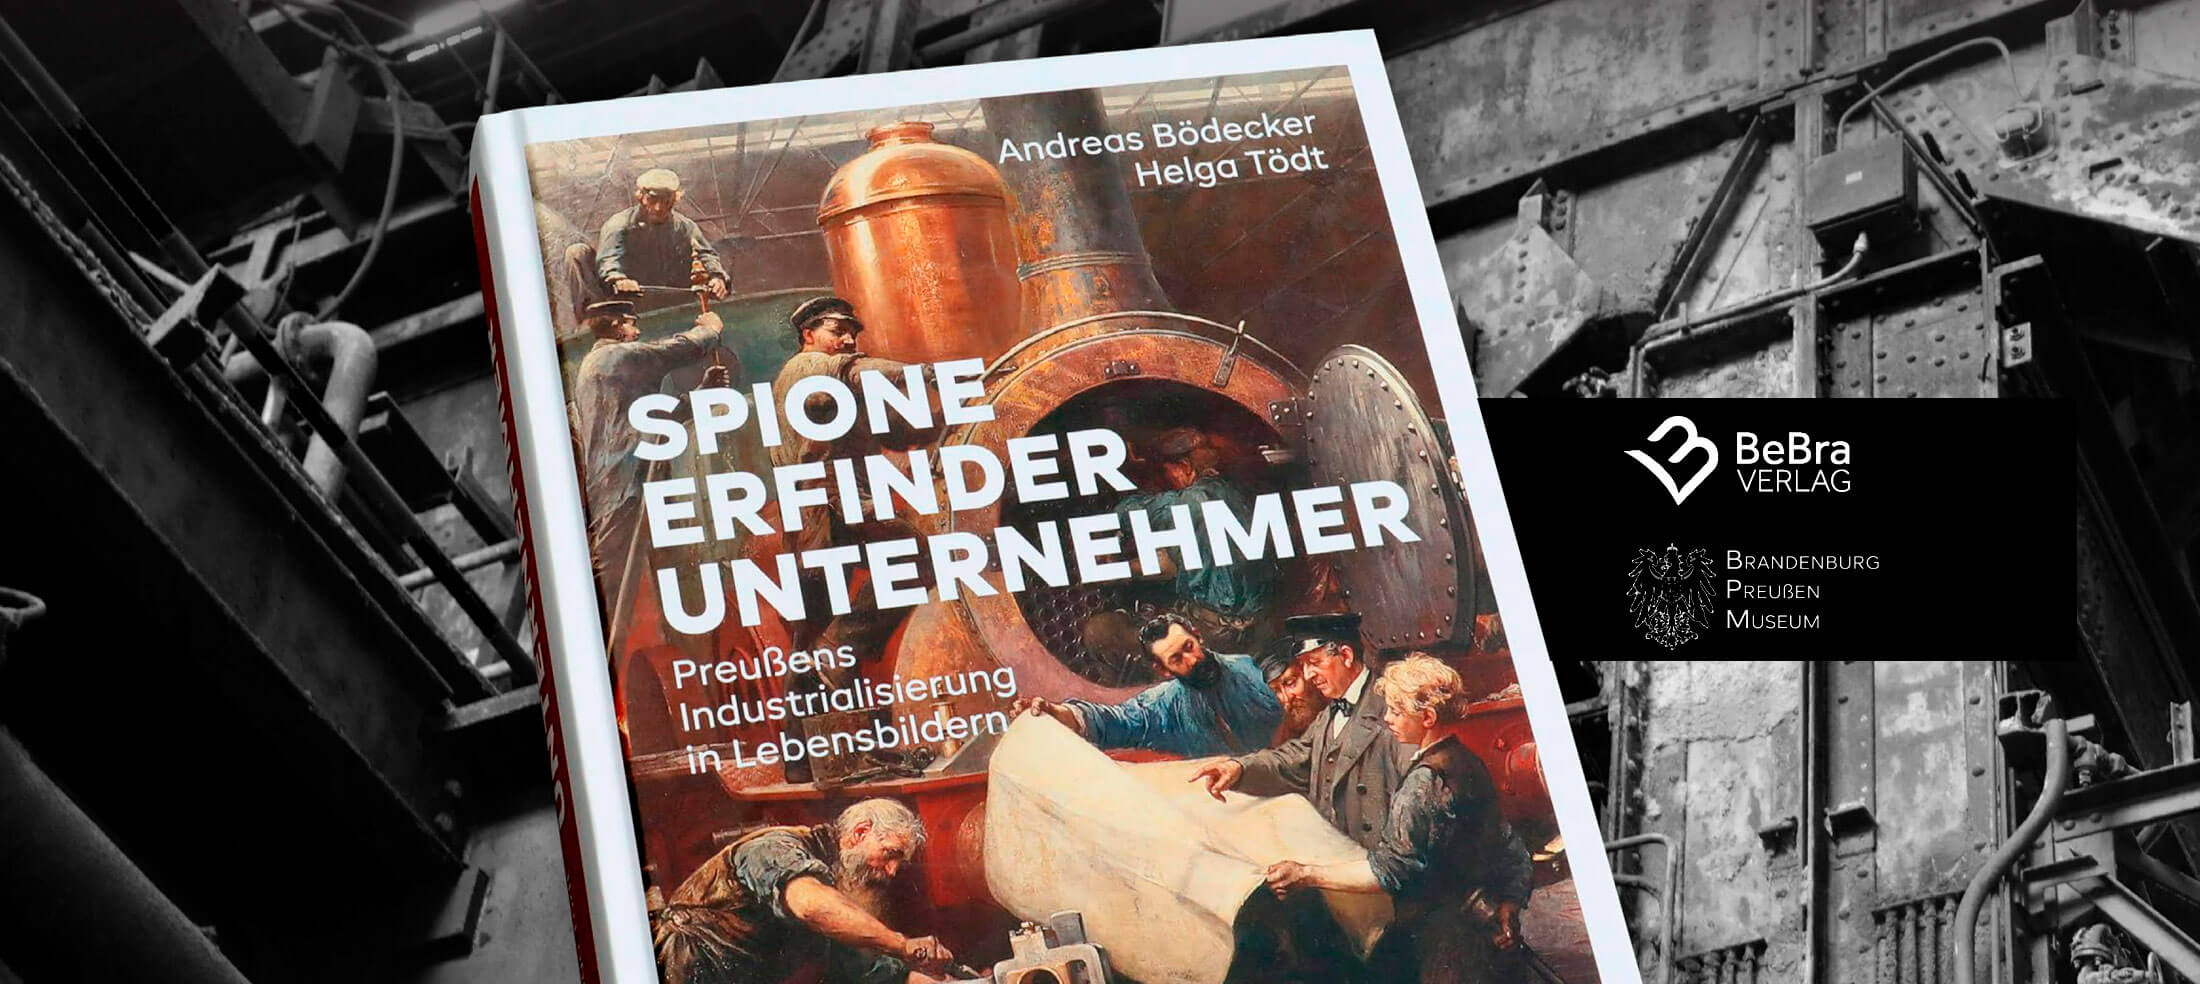 Vorstellung der Publikation Spione, Erfinder, Unternehmer – Preußens Industrialisierung in Lebensbildern im Industriemuseum Brandenburg